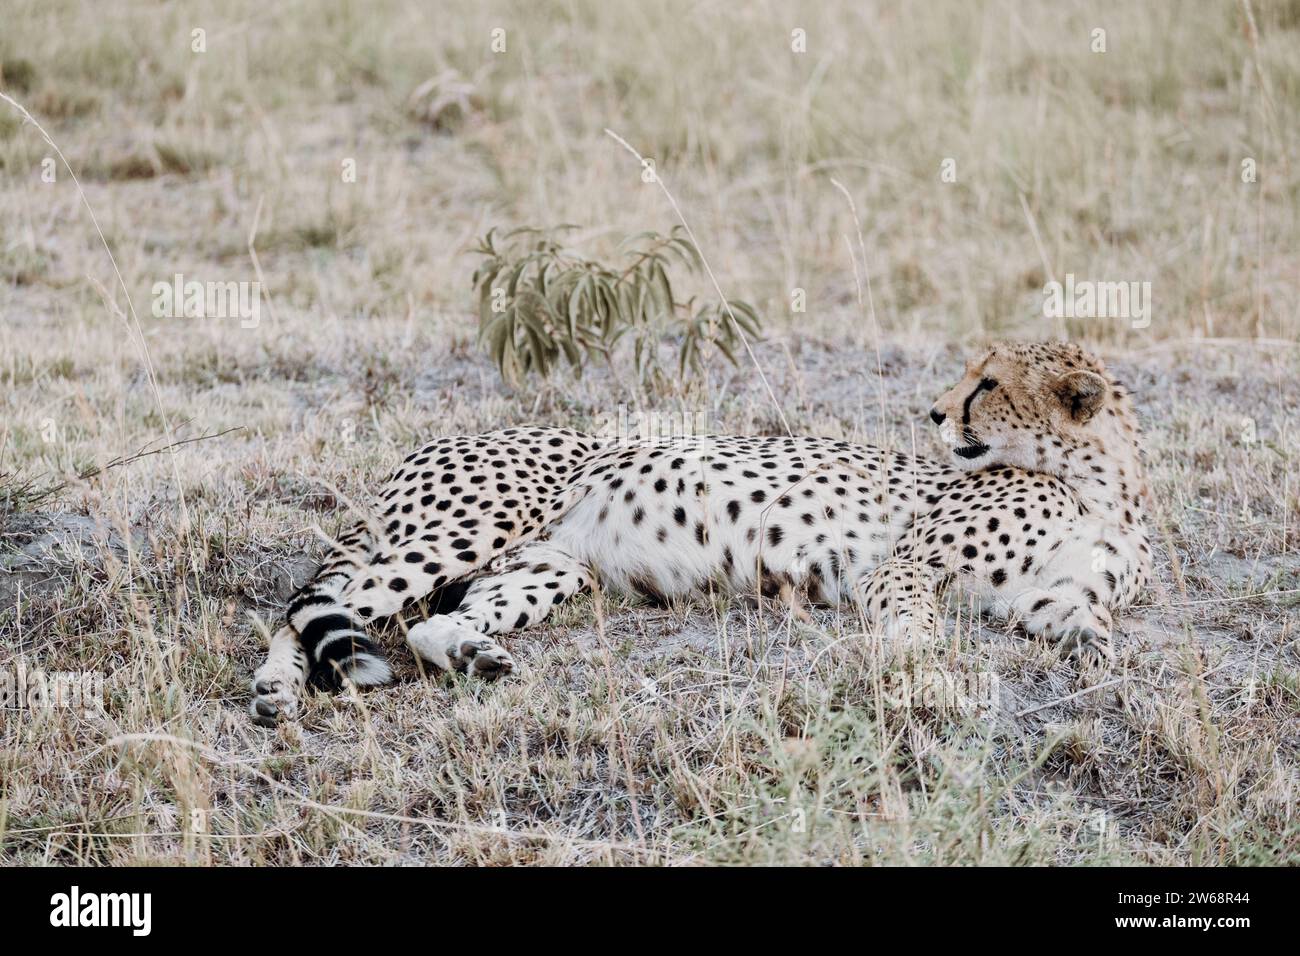 Ein friedlicher Gepard liegt im Grasland von Kenia, Afrika, mit seinen unverwechselbaren Orten und seiner entspannten Haltung. Stockfoto